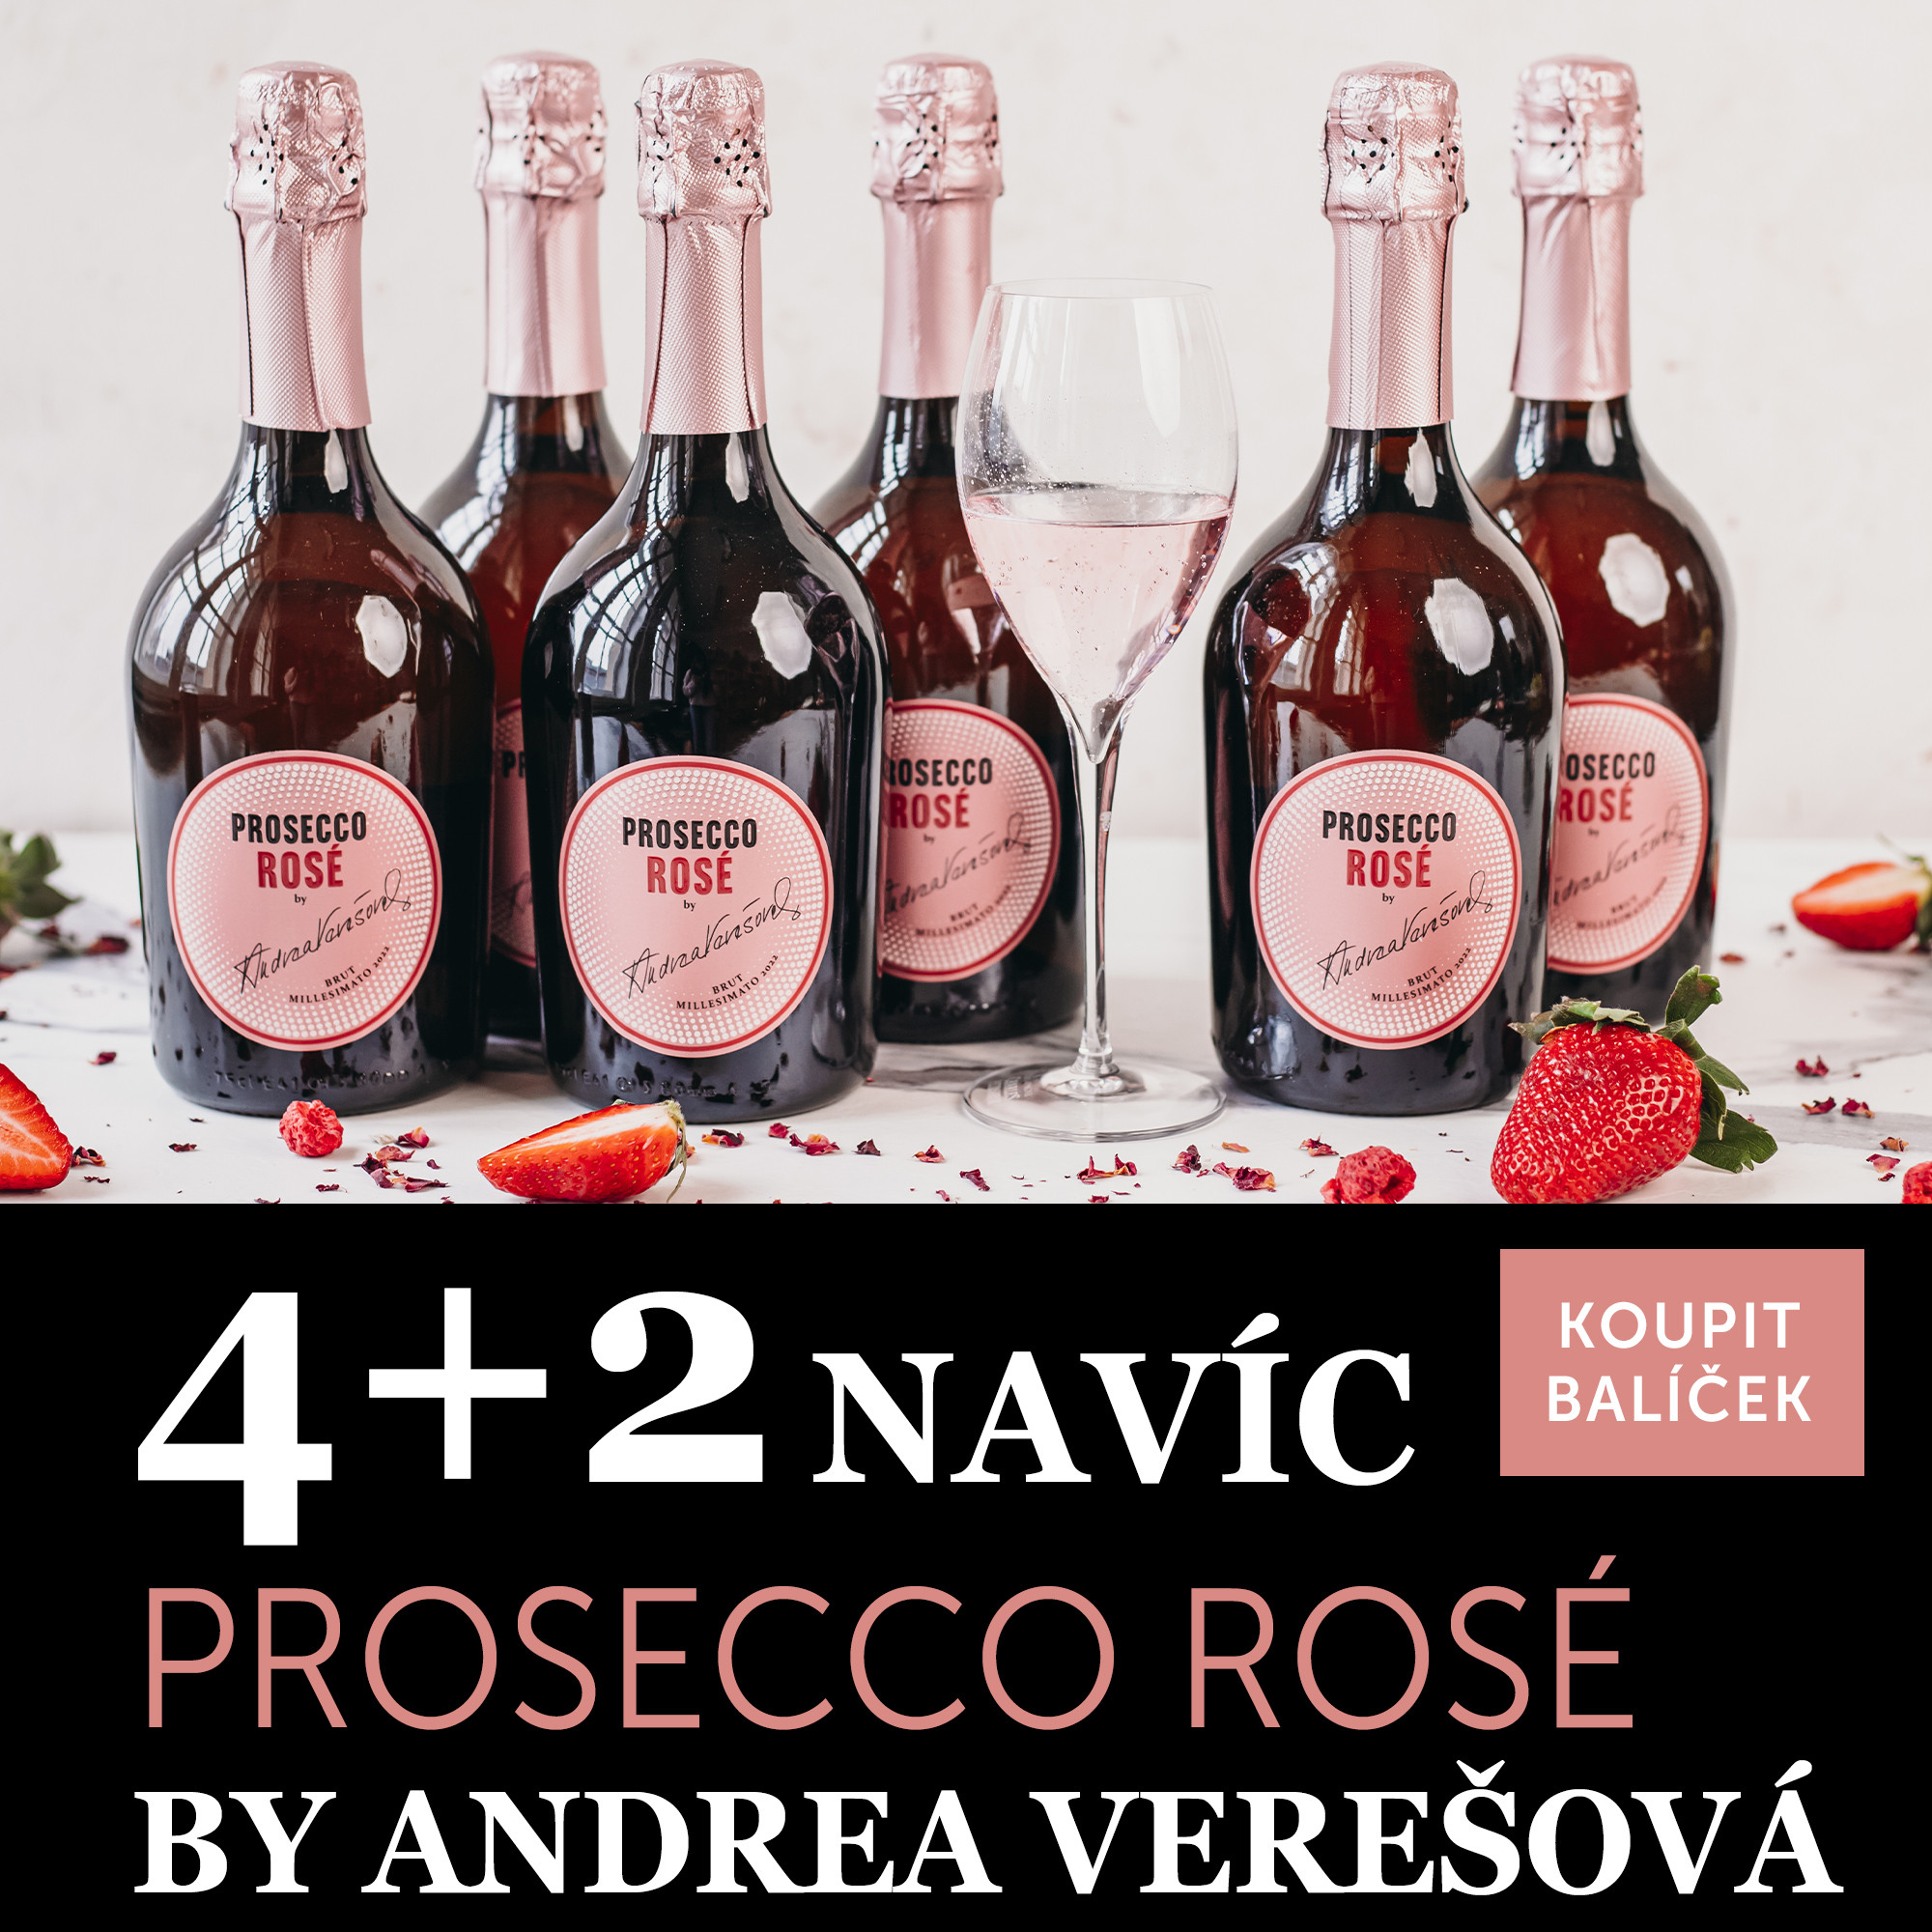 Víno měsíce června - Prosecco Rosé by Andrea Verešová 4+2 navíc - UKONČENO